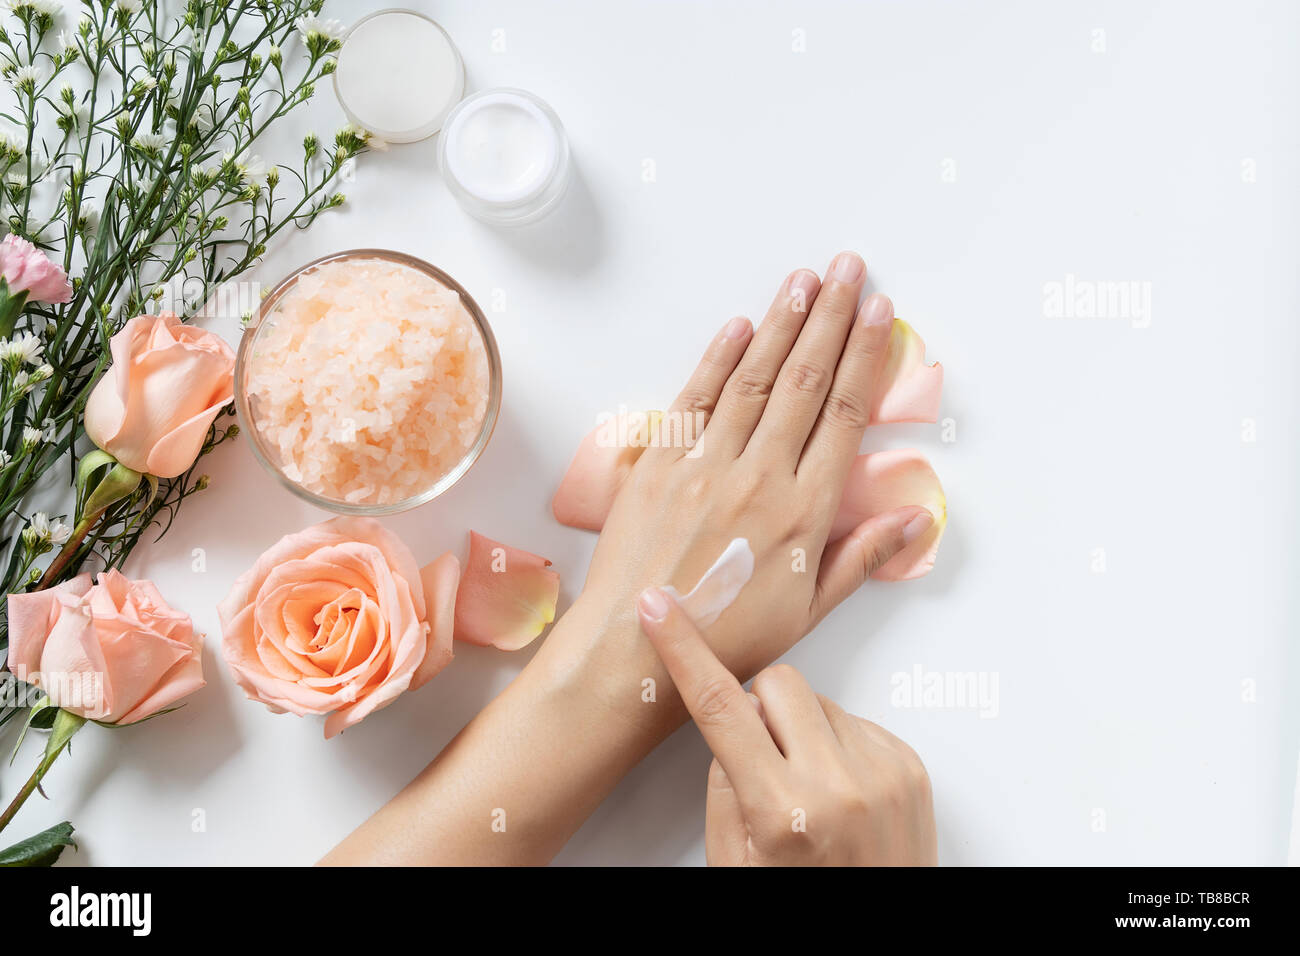 Soin naturel concept. femme appliquer la crème sur ses mains blanches sur fond blanc avec pot de crème cosmétique, spa, gommage sel rose et de fleurs blanches Banque D'Images